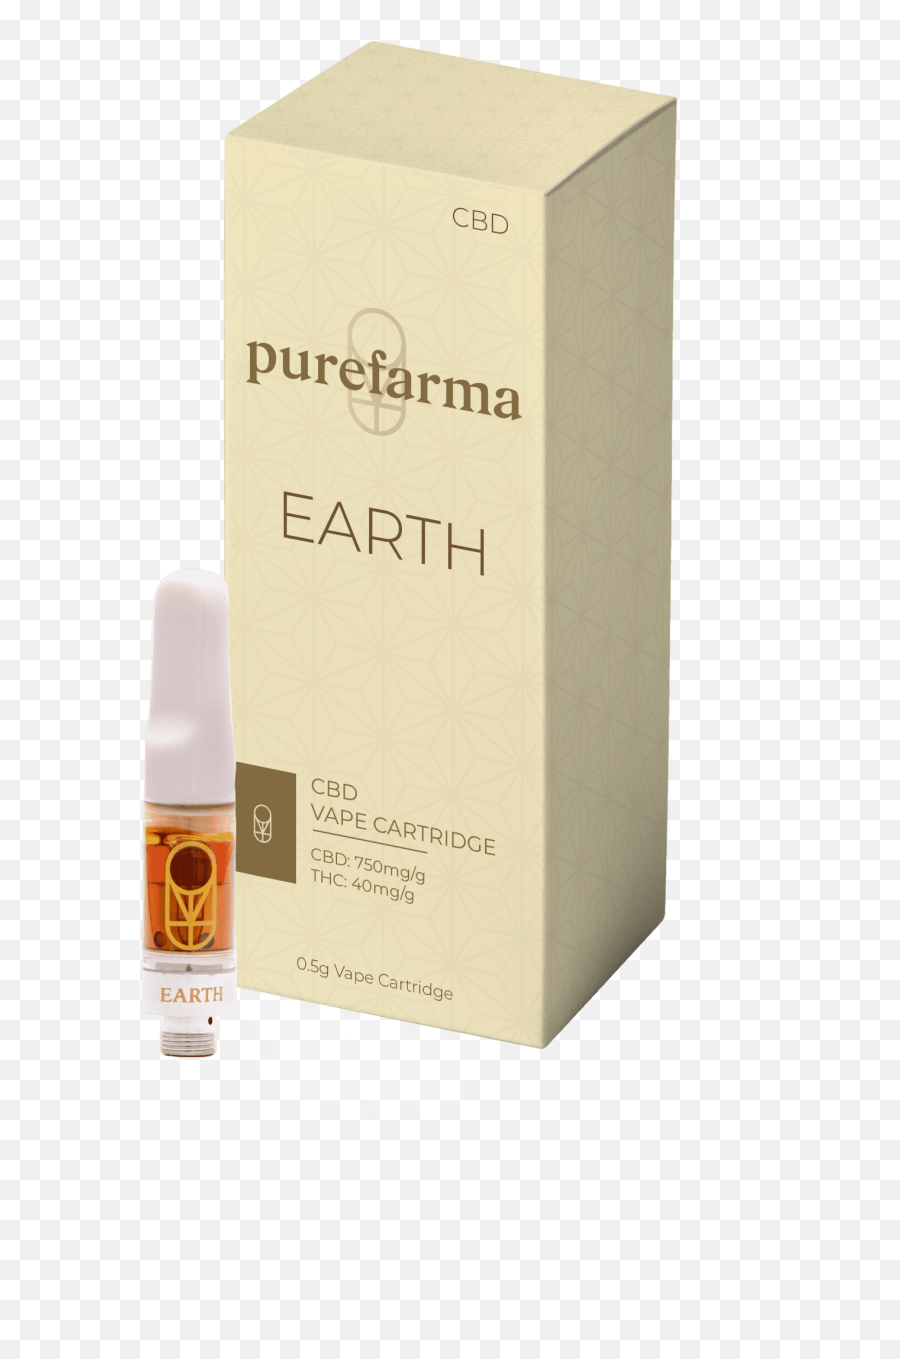 Cbd Earth Vape Purefarma - Purefarma Cbd Earth Cartridge Png,Info On Icon Vapor Cbd Oil Jungle Juice